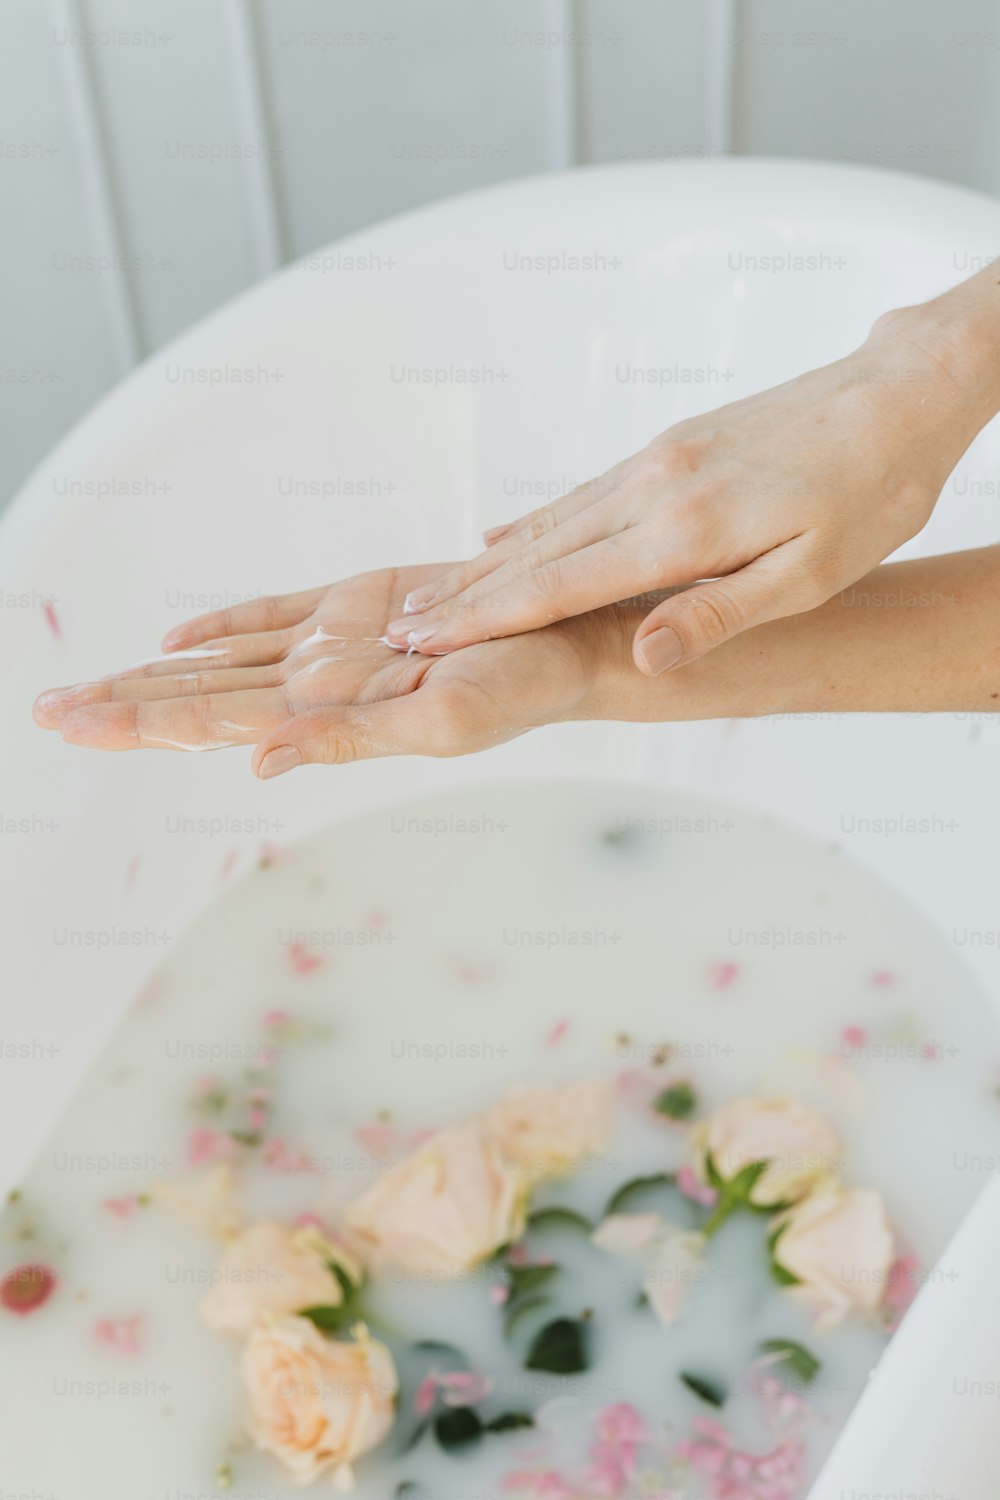 Une femme se lave les mains dans une baignoire